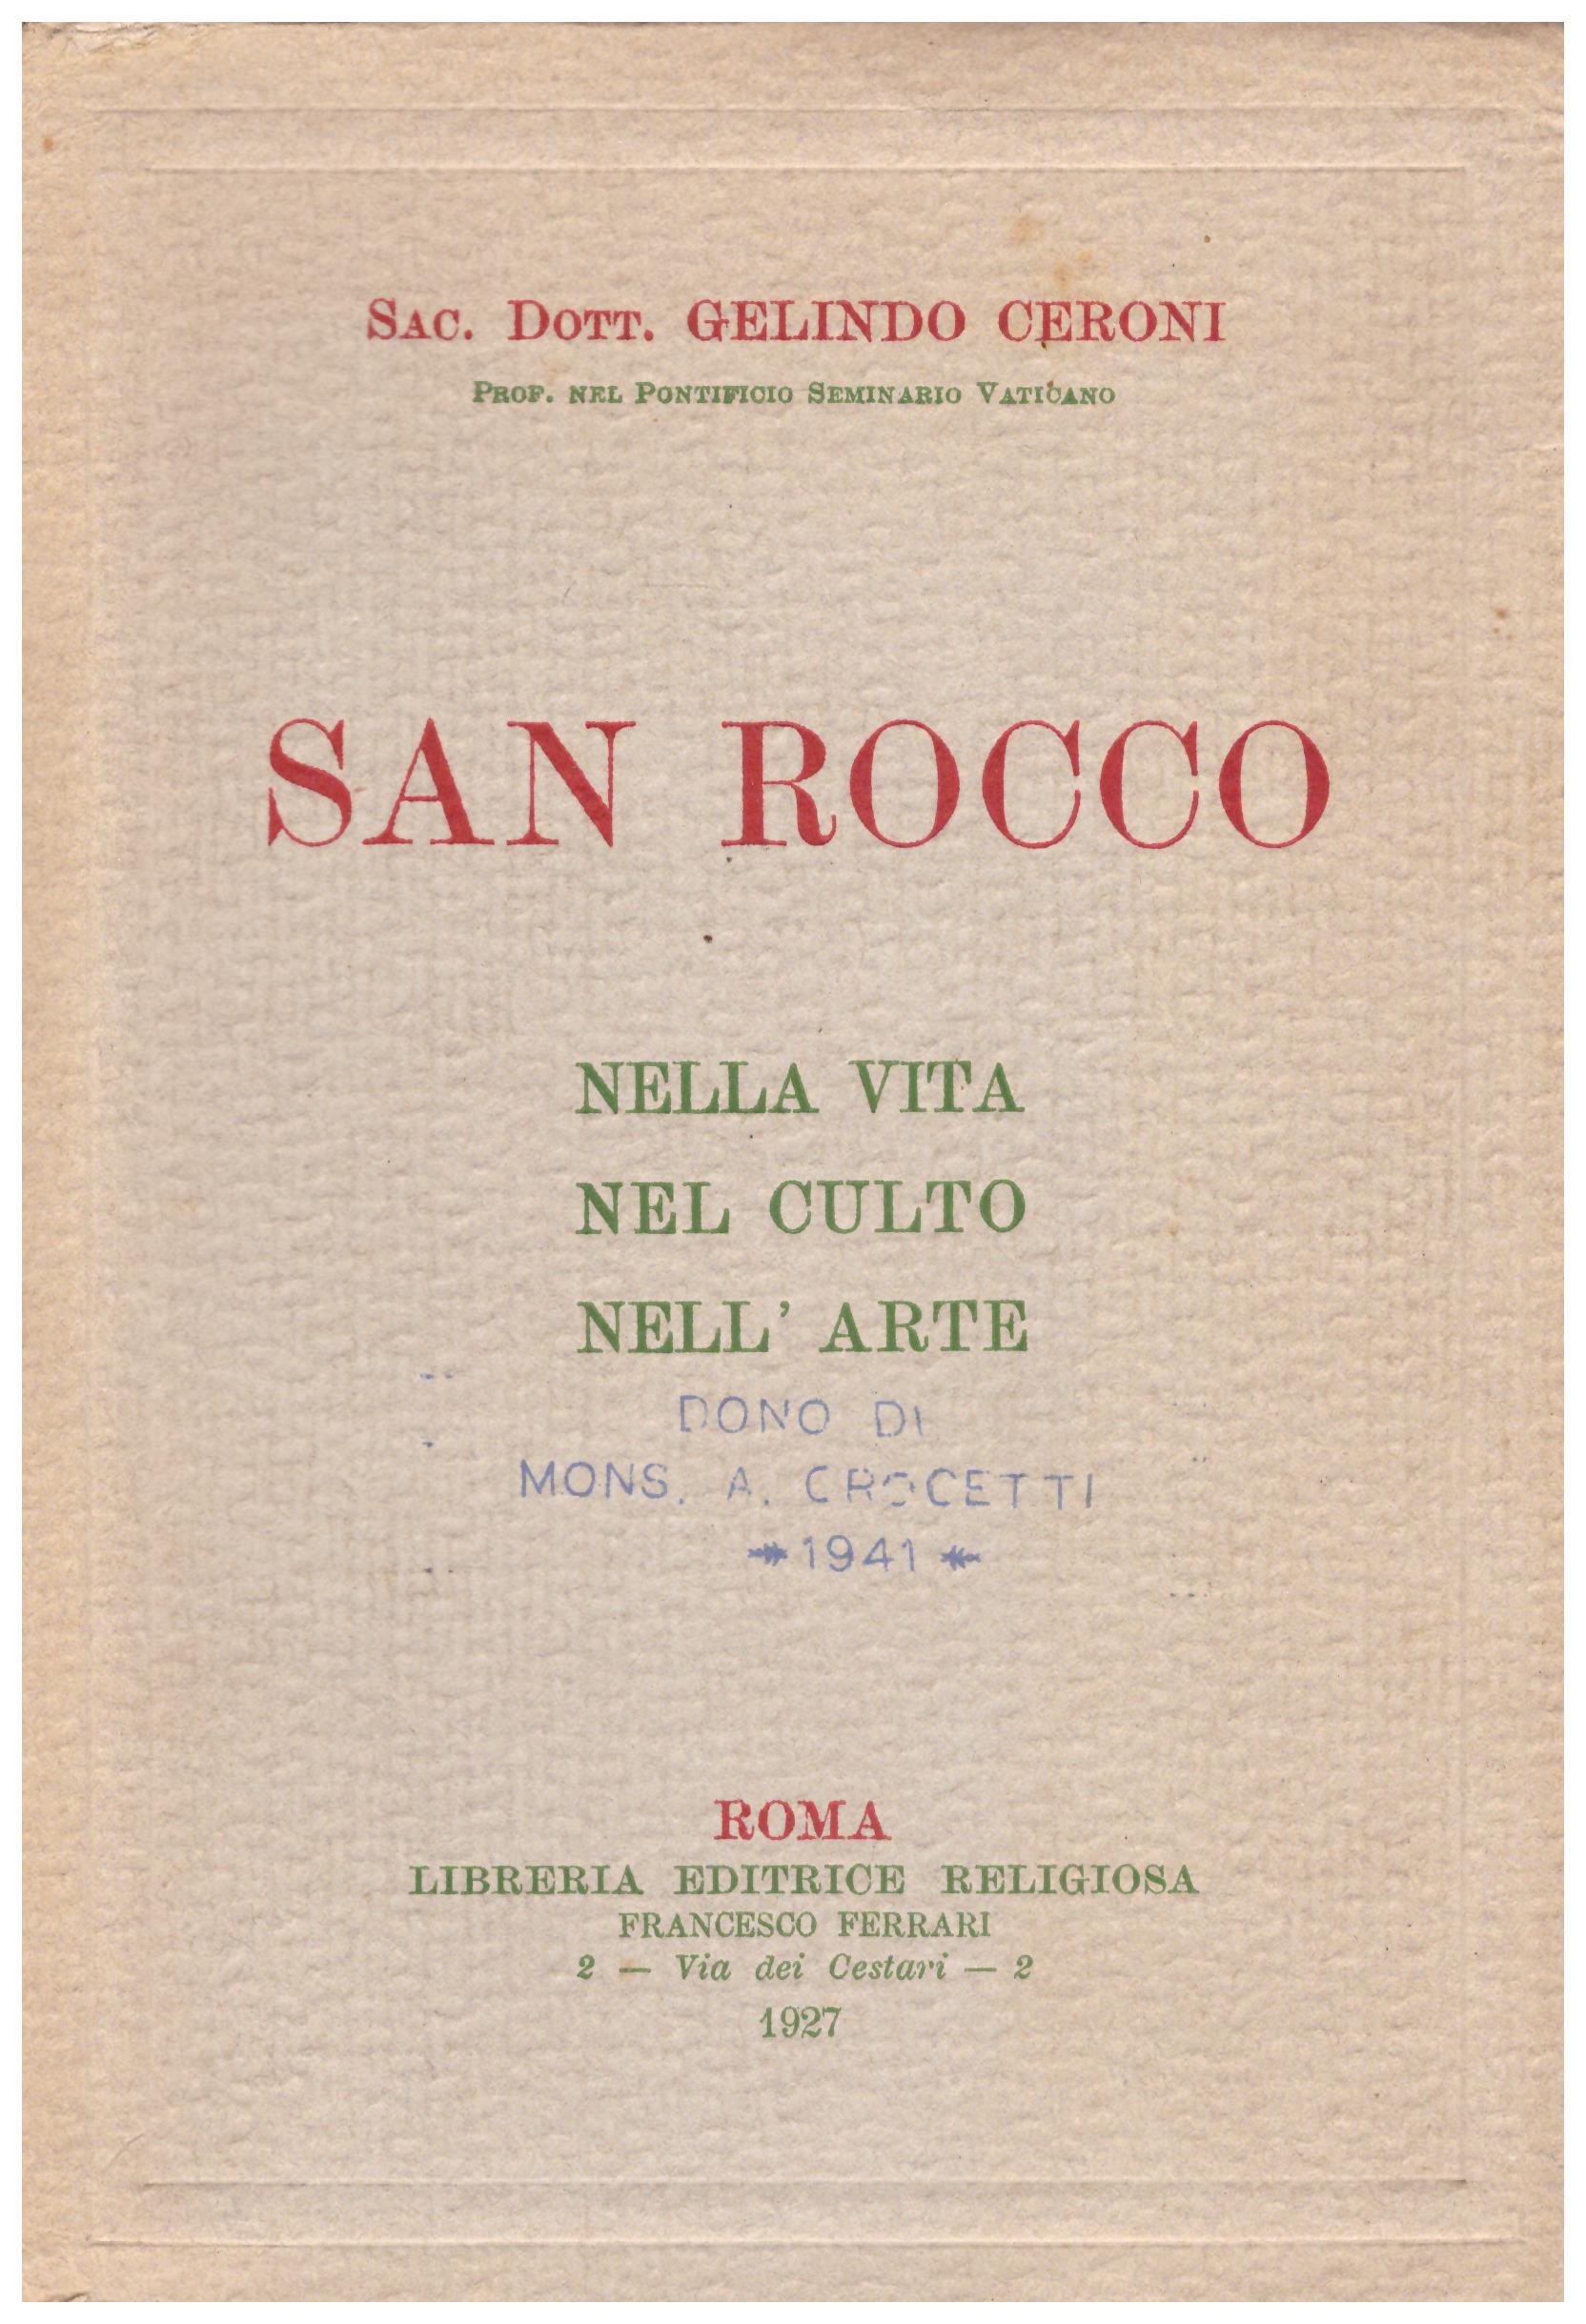 Titolo: San Rocco Autore : Sac. Dott. Gelindo Ceroni Editore: libreria editrice religiosa, Roma 1927